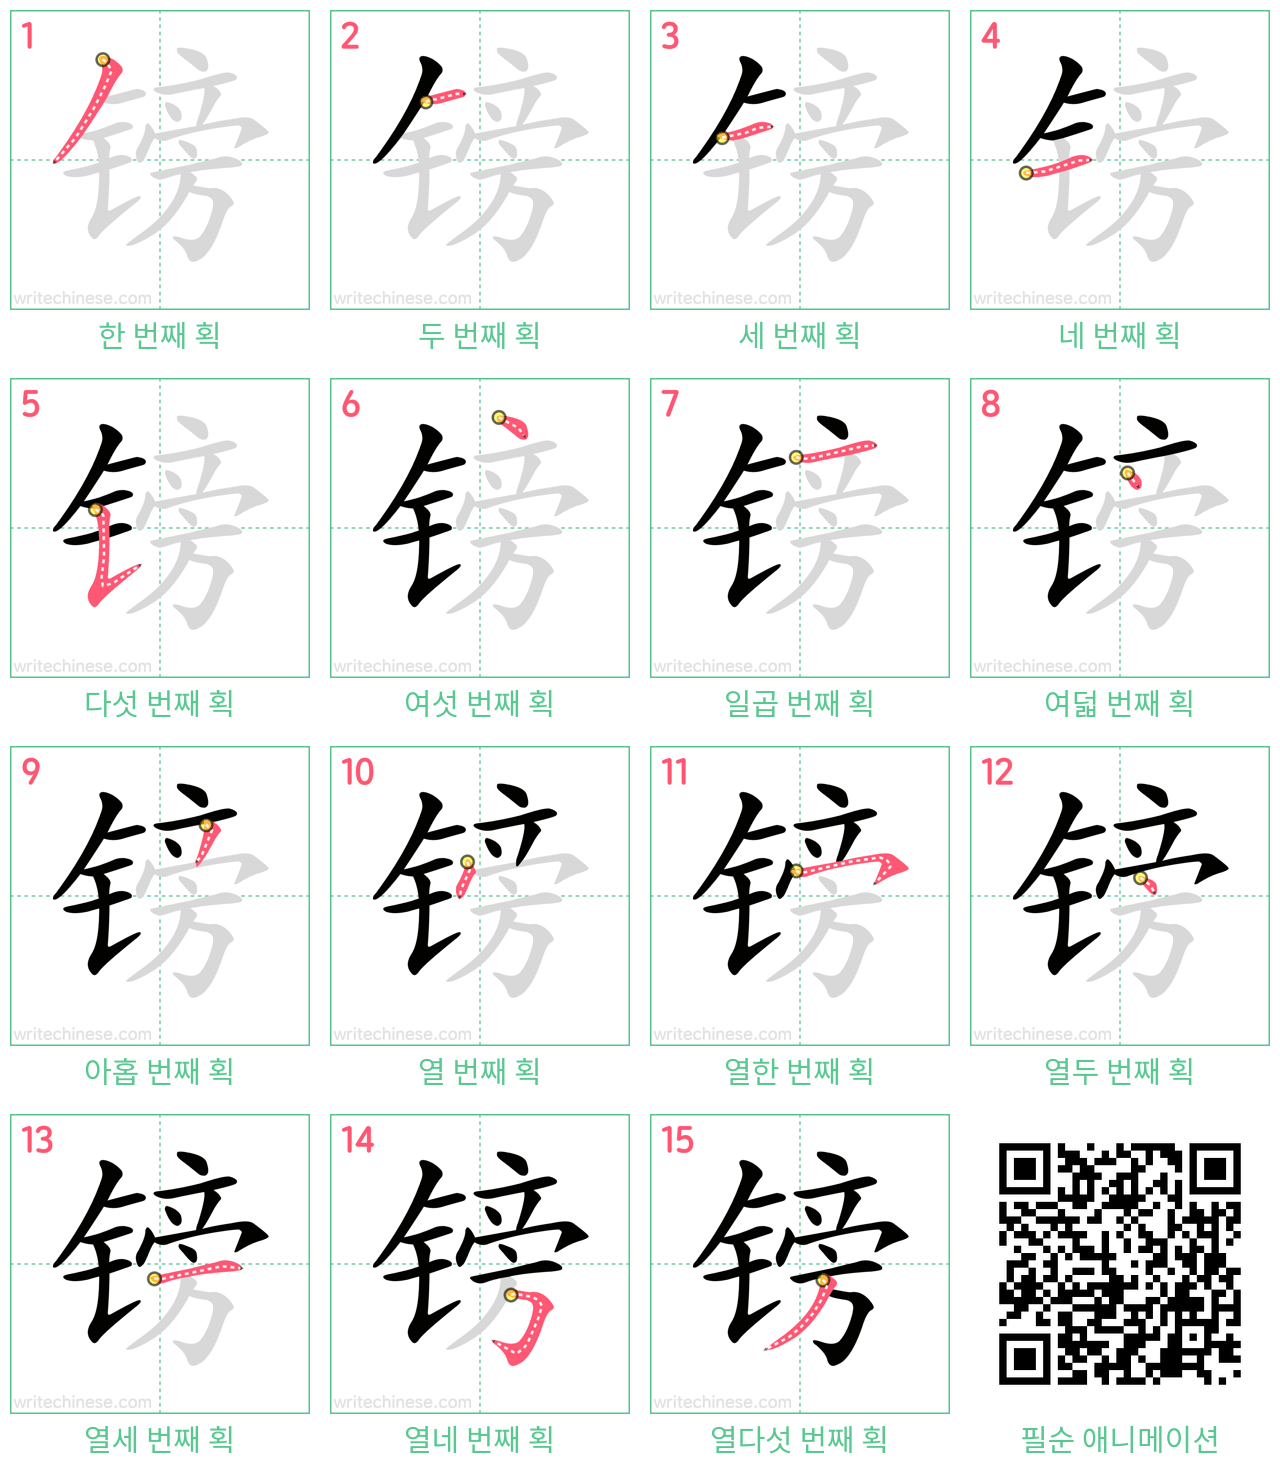 镑 step-by-step stroke order diagrams